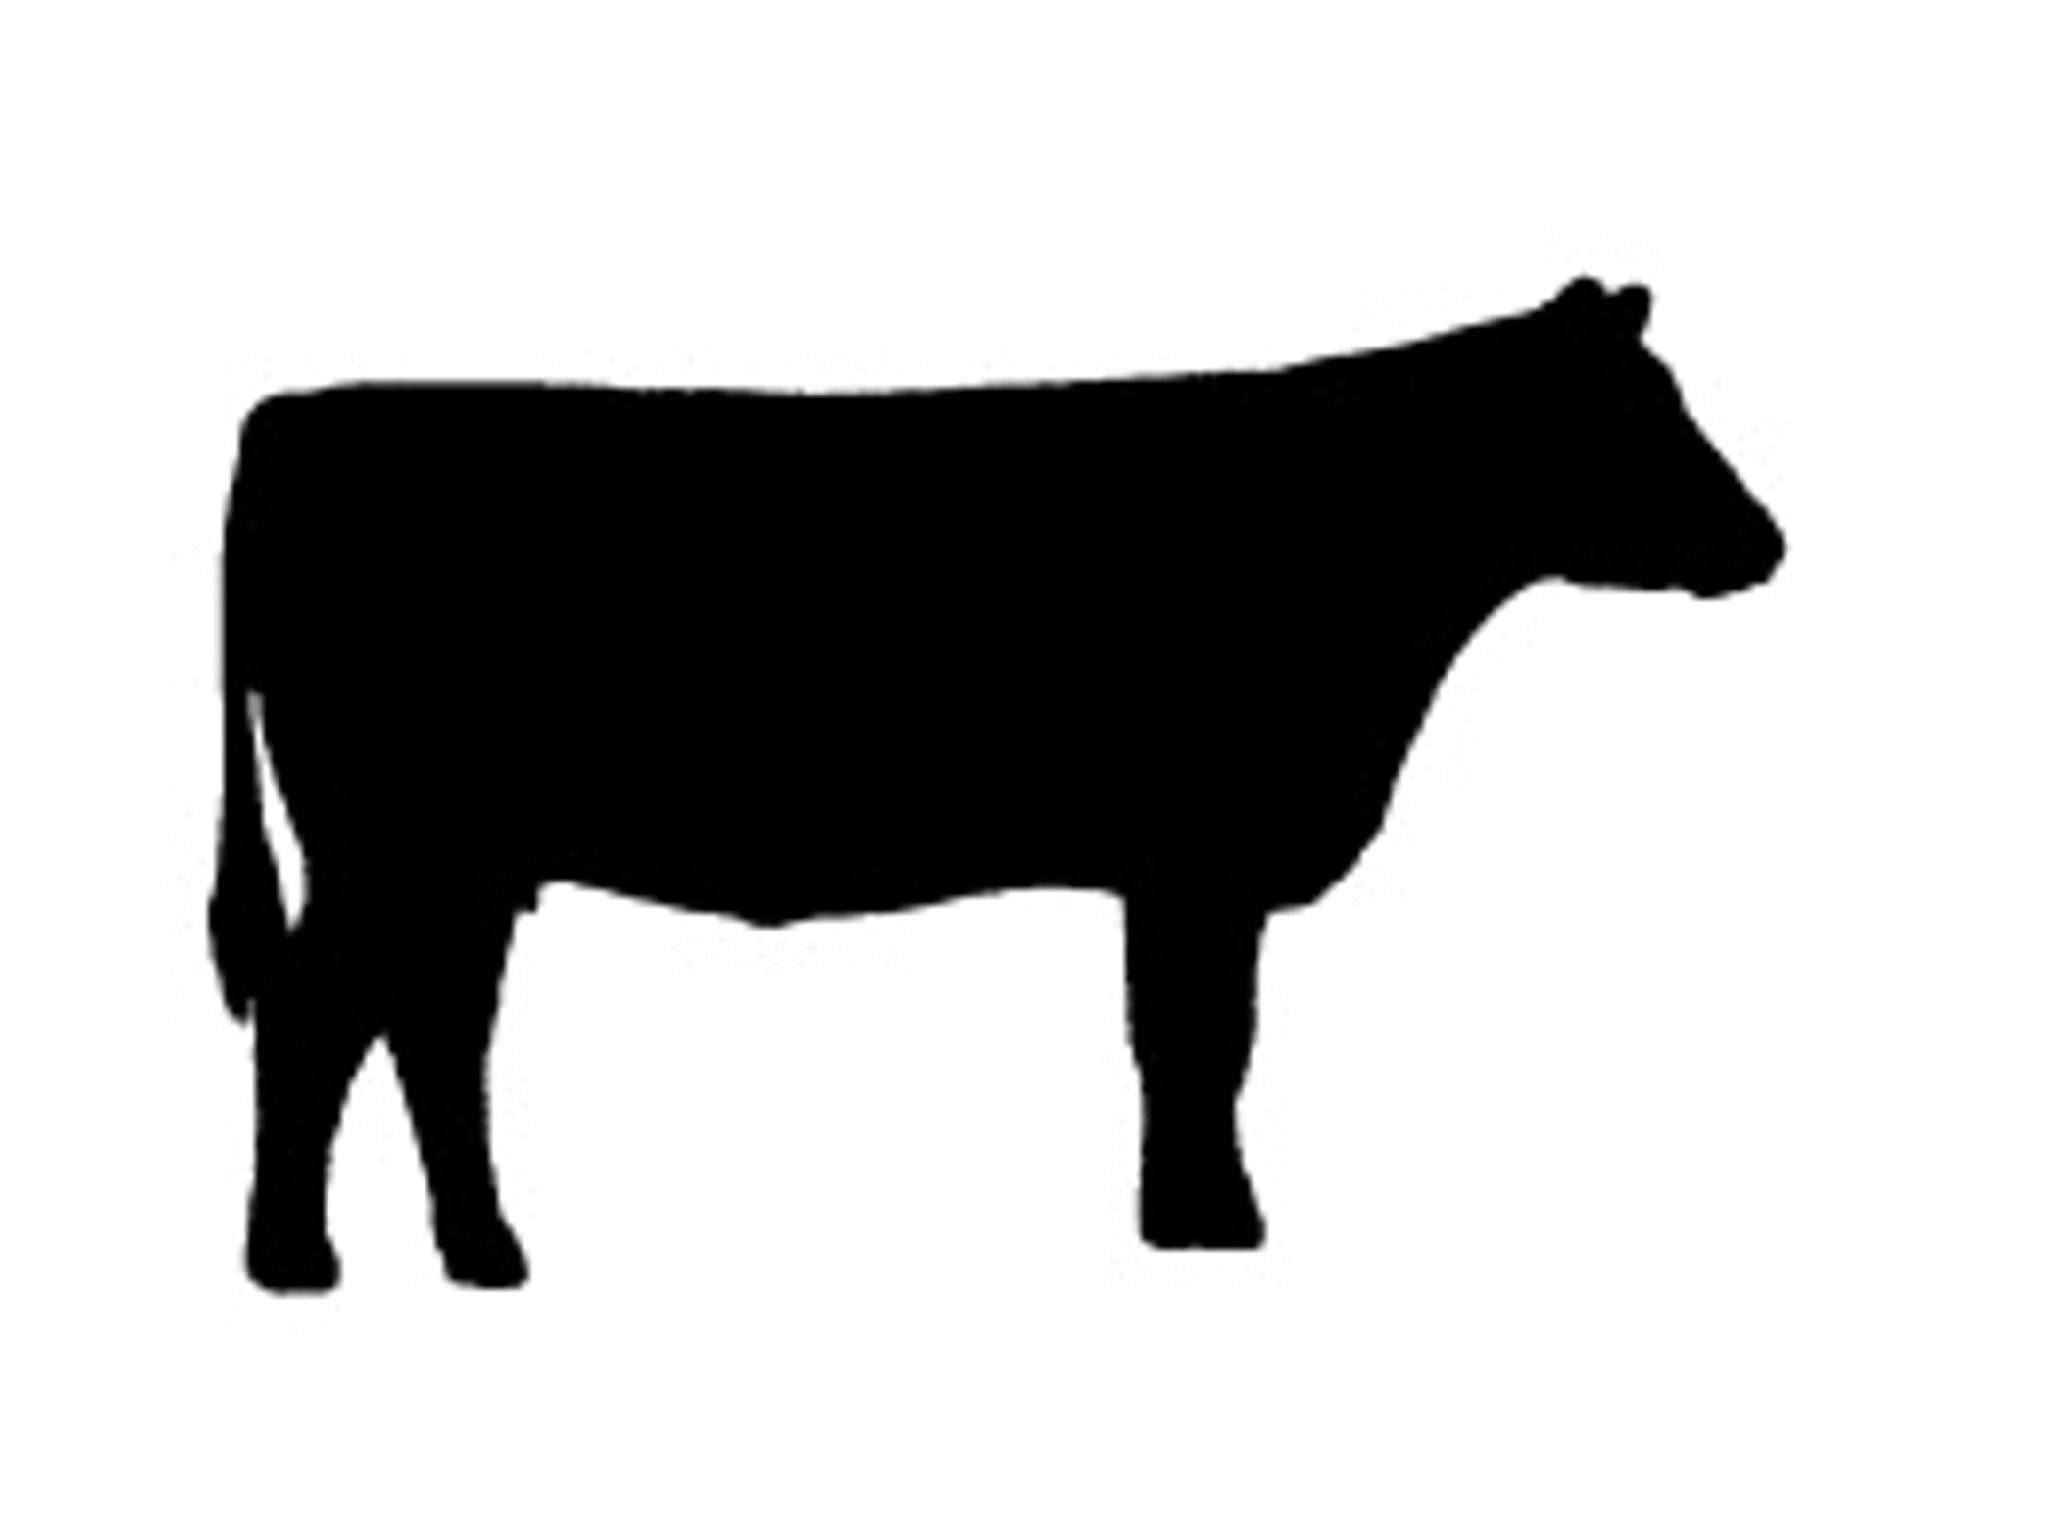 Cattle Silhouette Clip Art - KibrisPDR